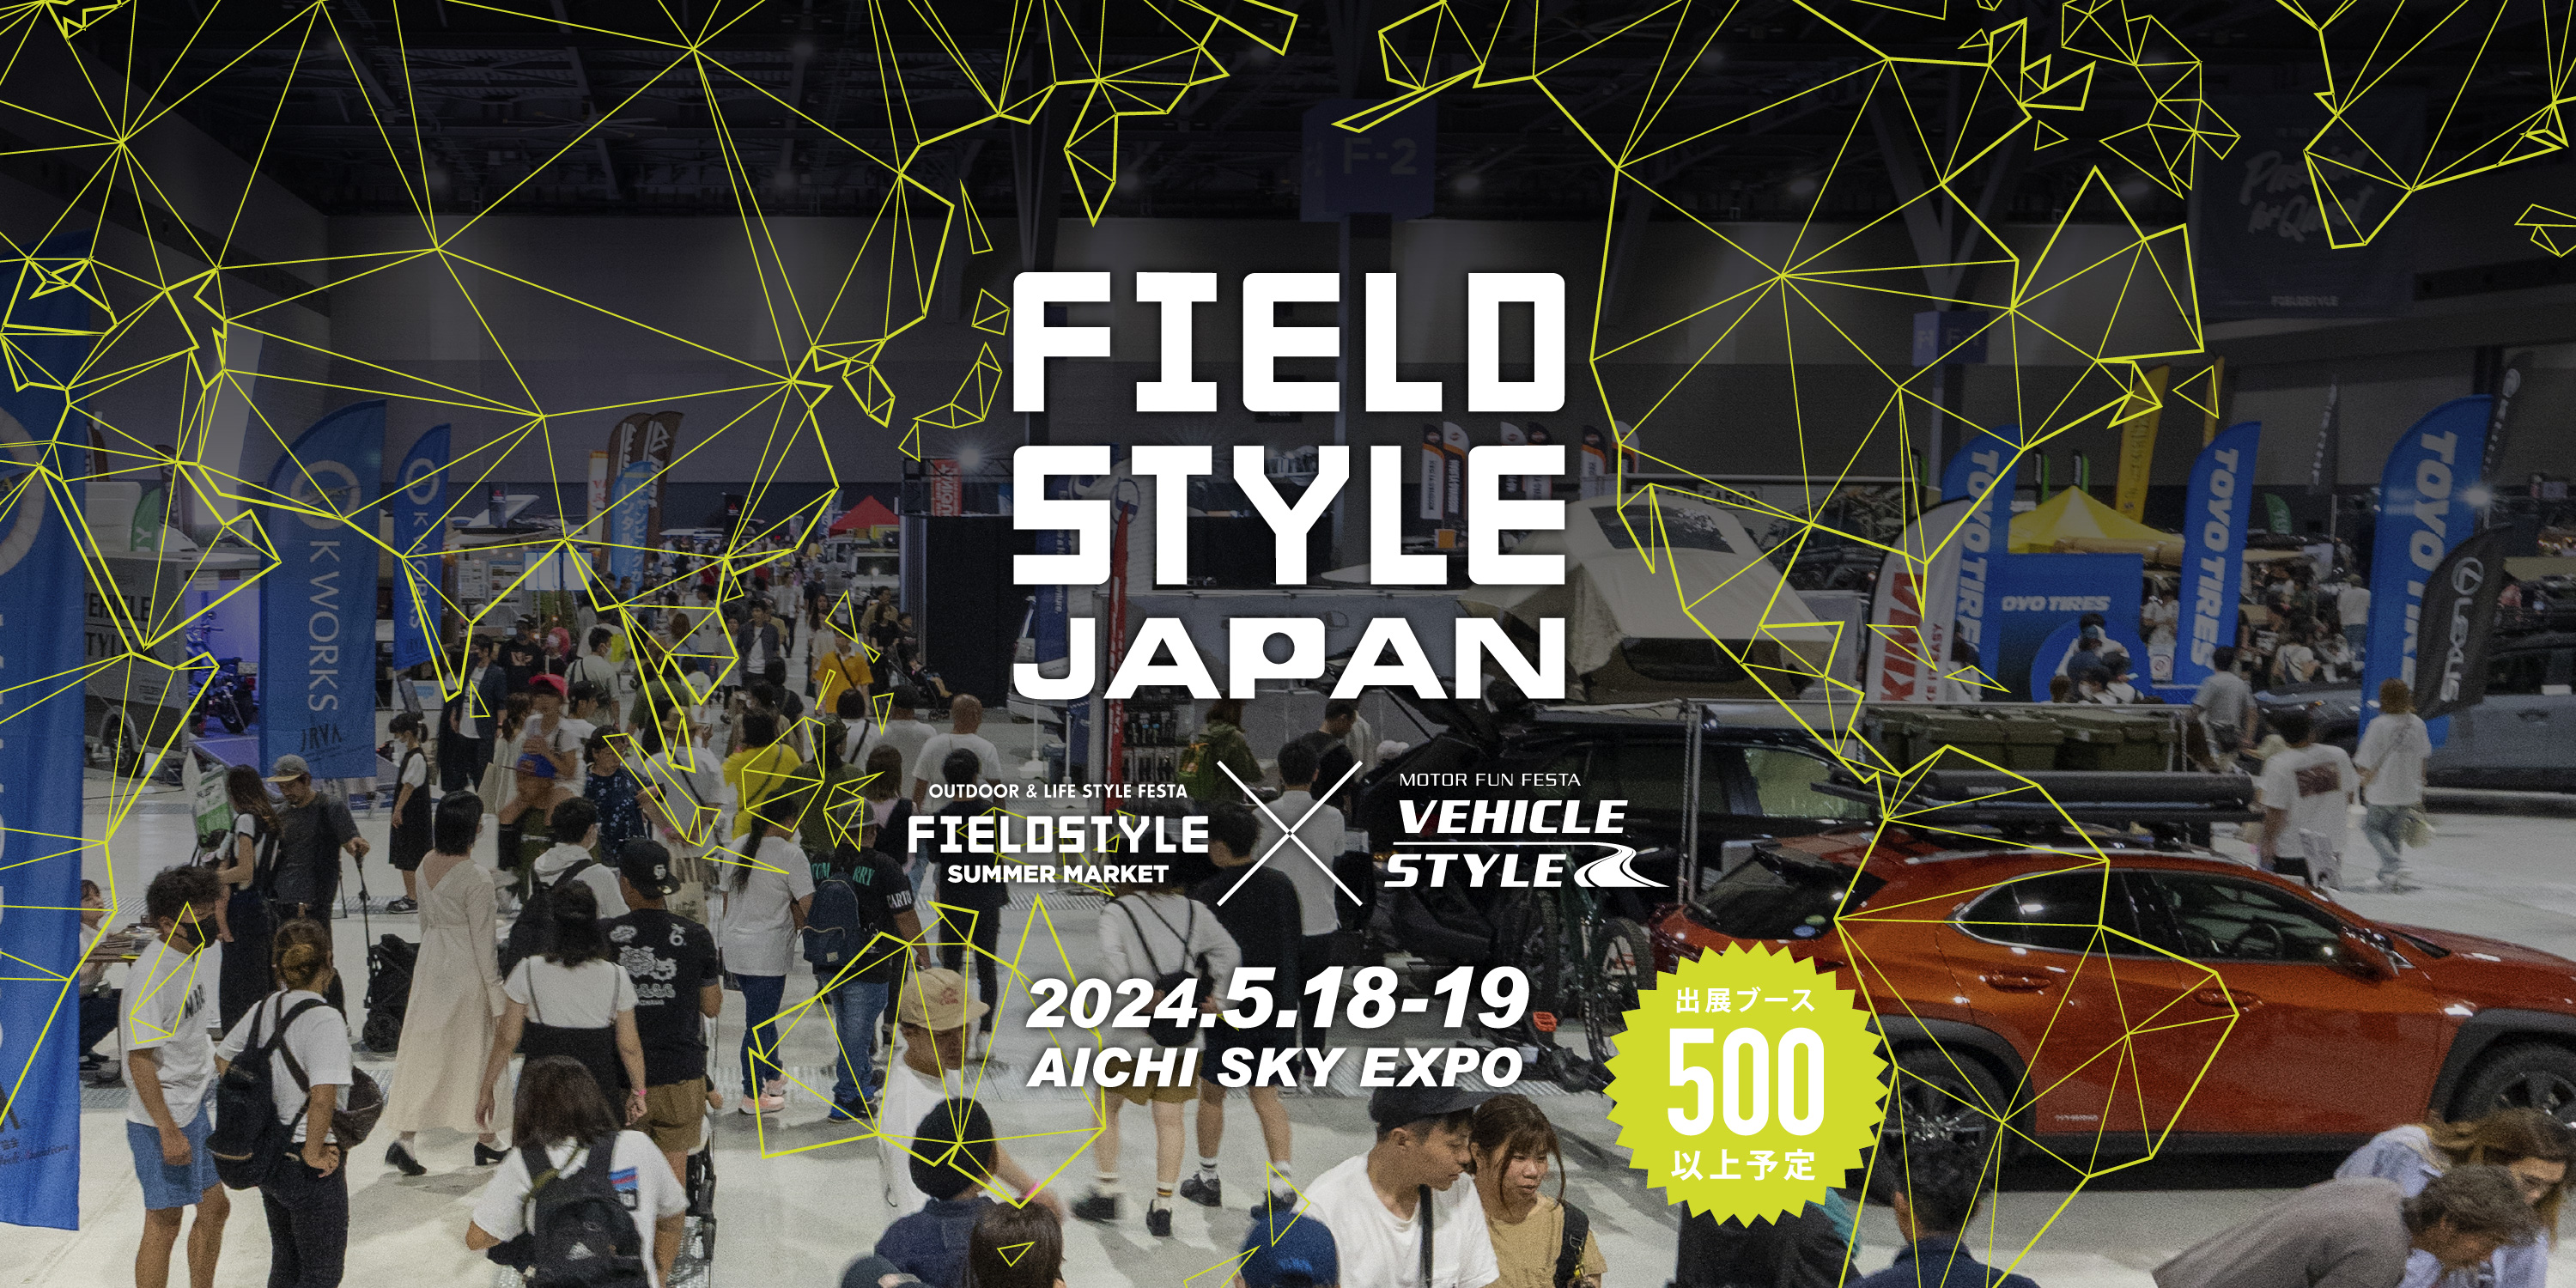 FIELDSTYLE JAPAN 2024